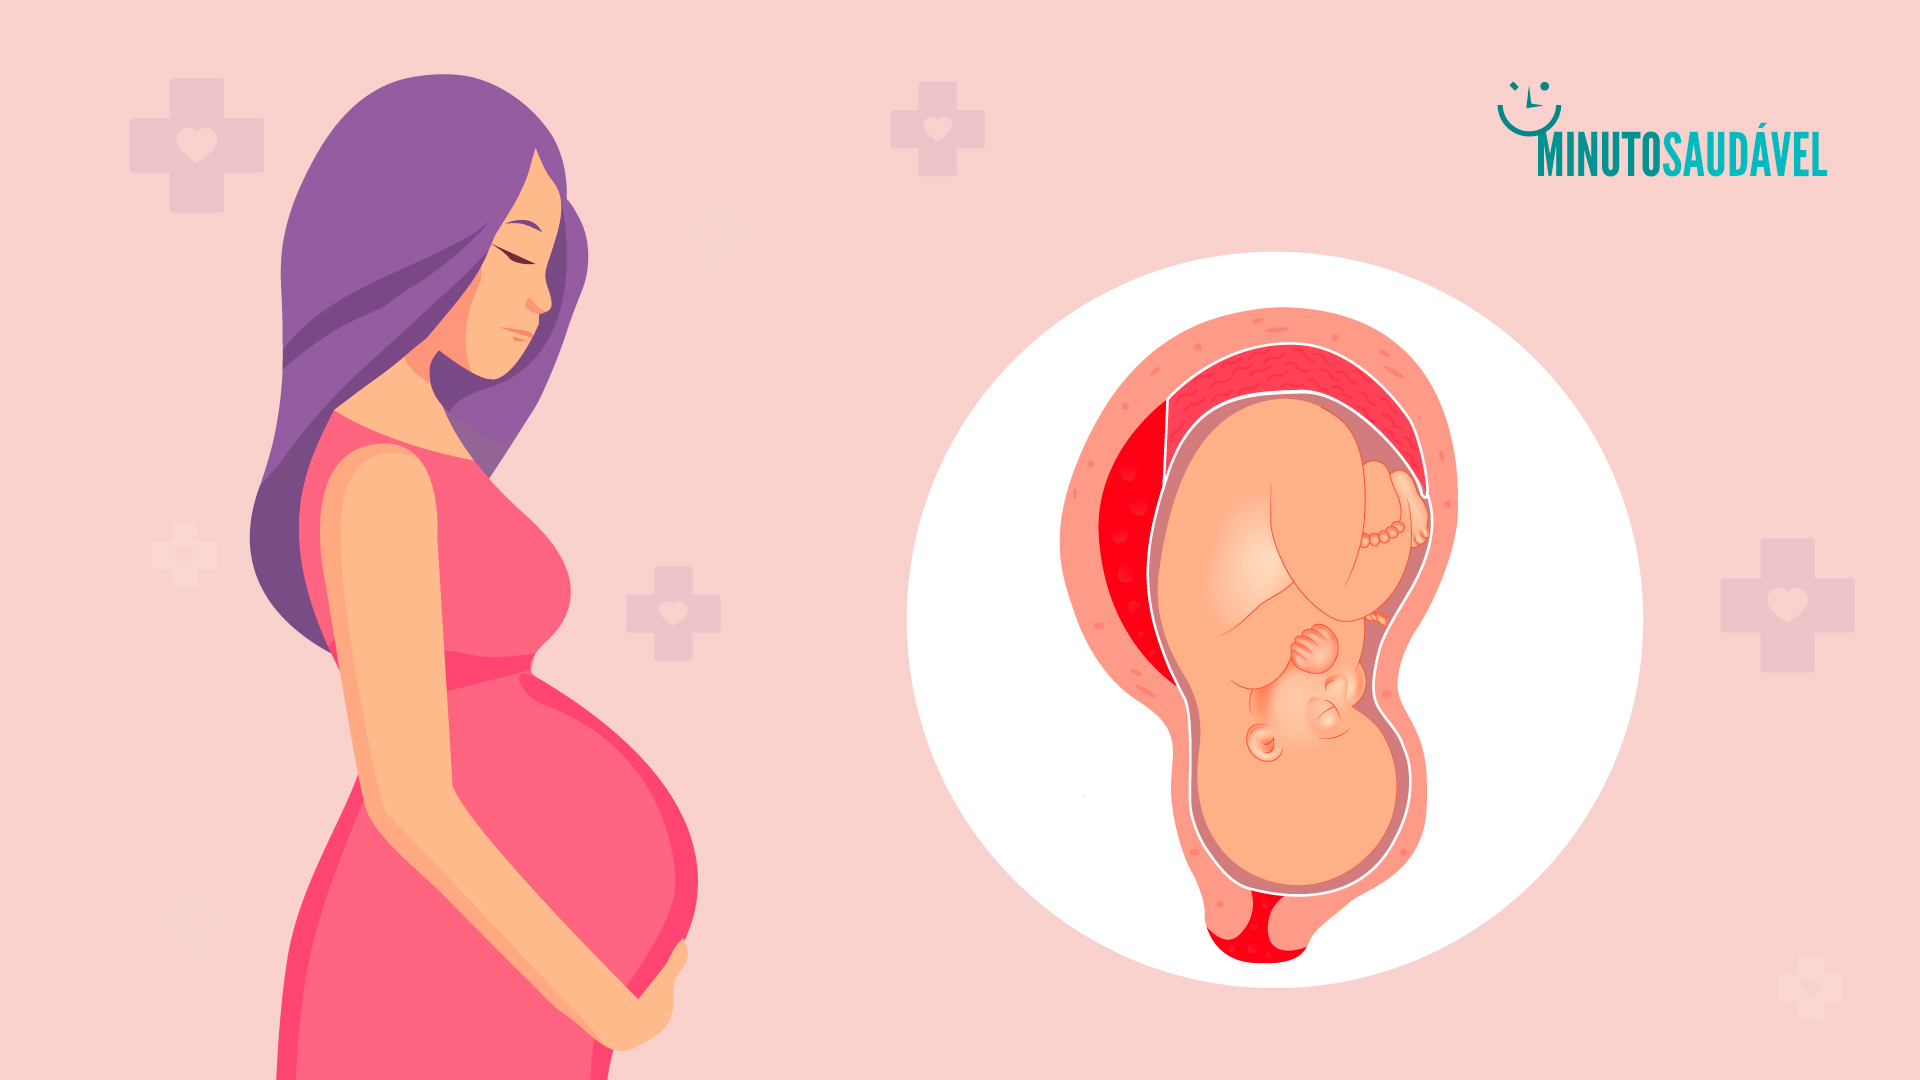 Foto de capa do artigo "Descolamento da placenta: é grave? Veja quais os sintomas"